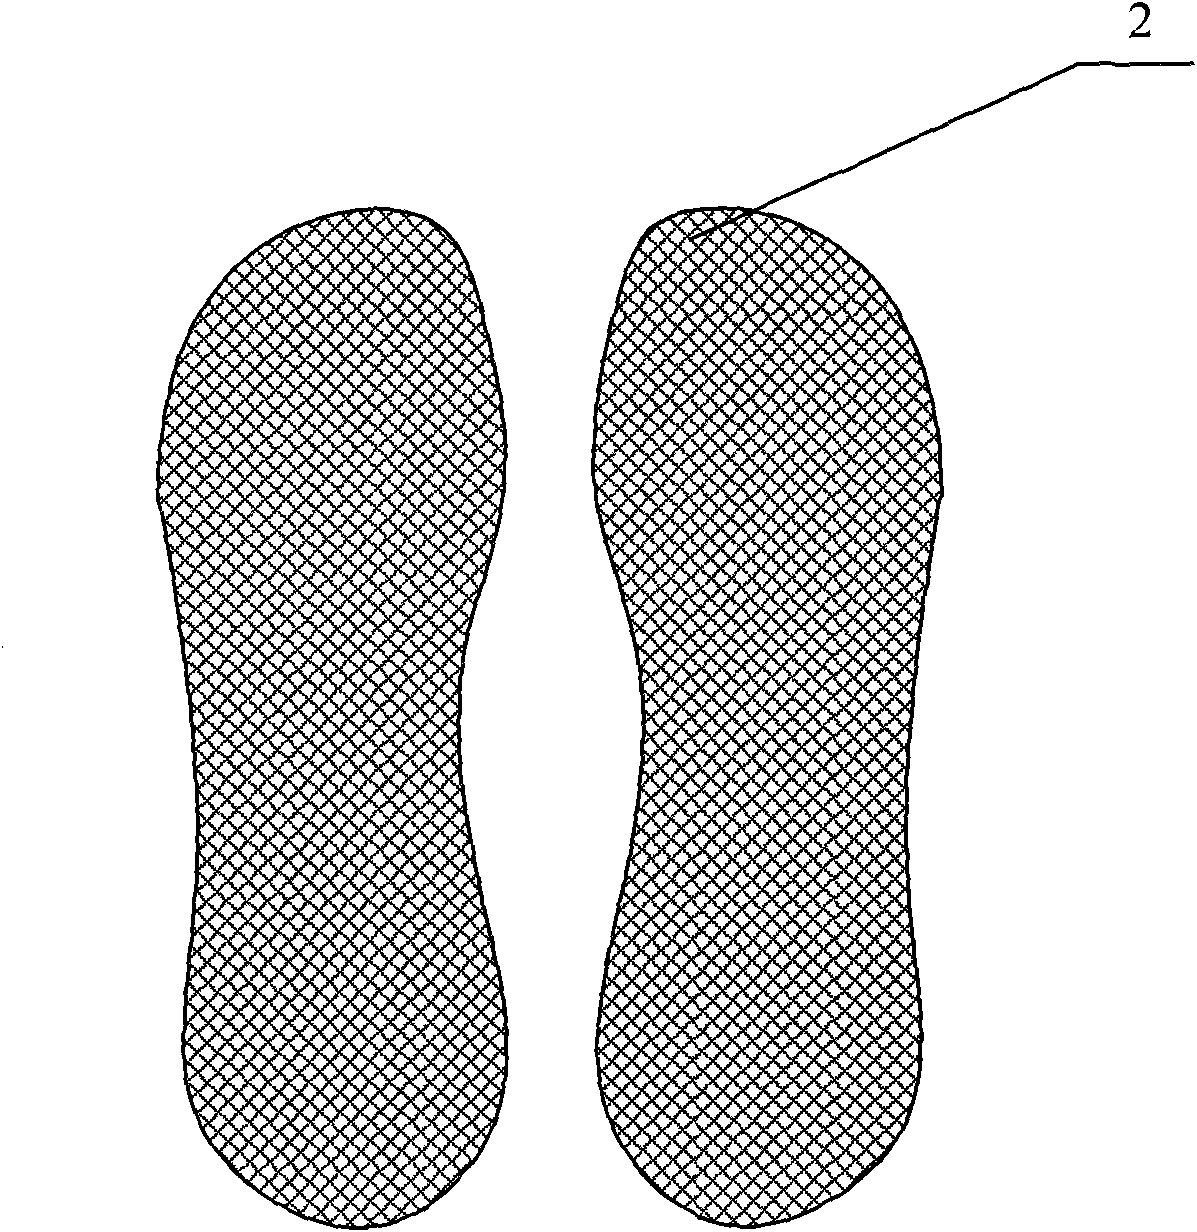 Slipper-type mop device